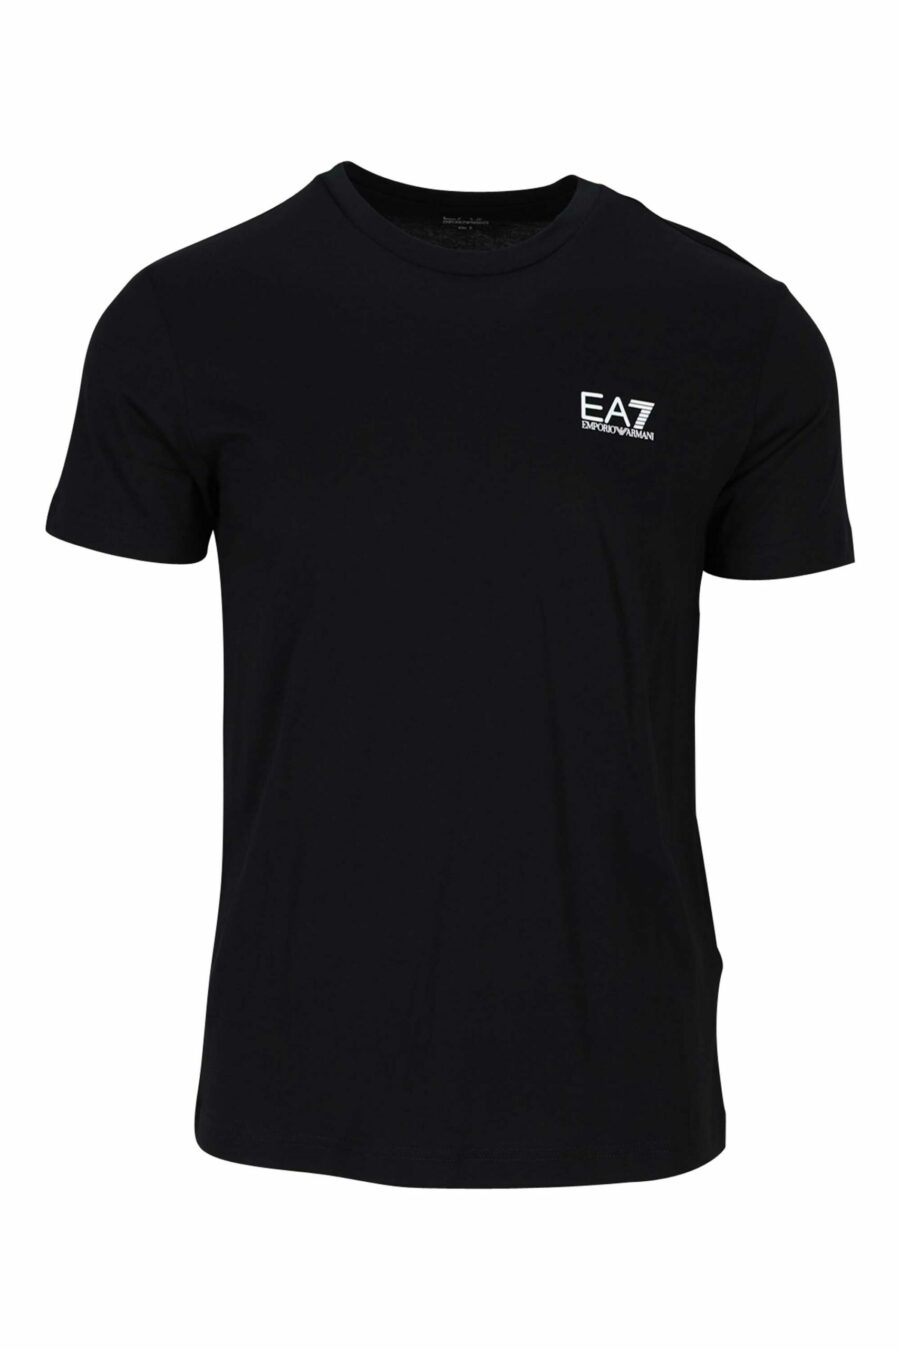 T-shirt preta com mini-logotipo gradiente "lux identity" branco - 8055187167147 à escala